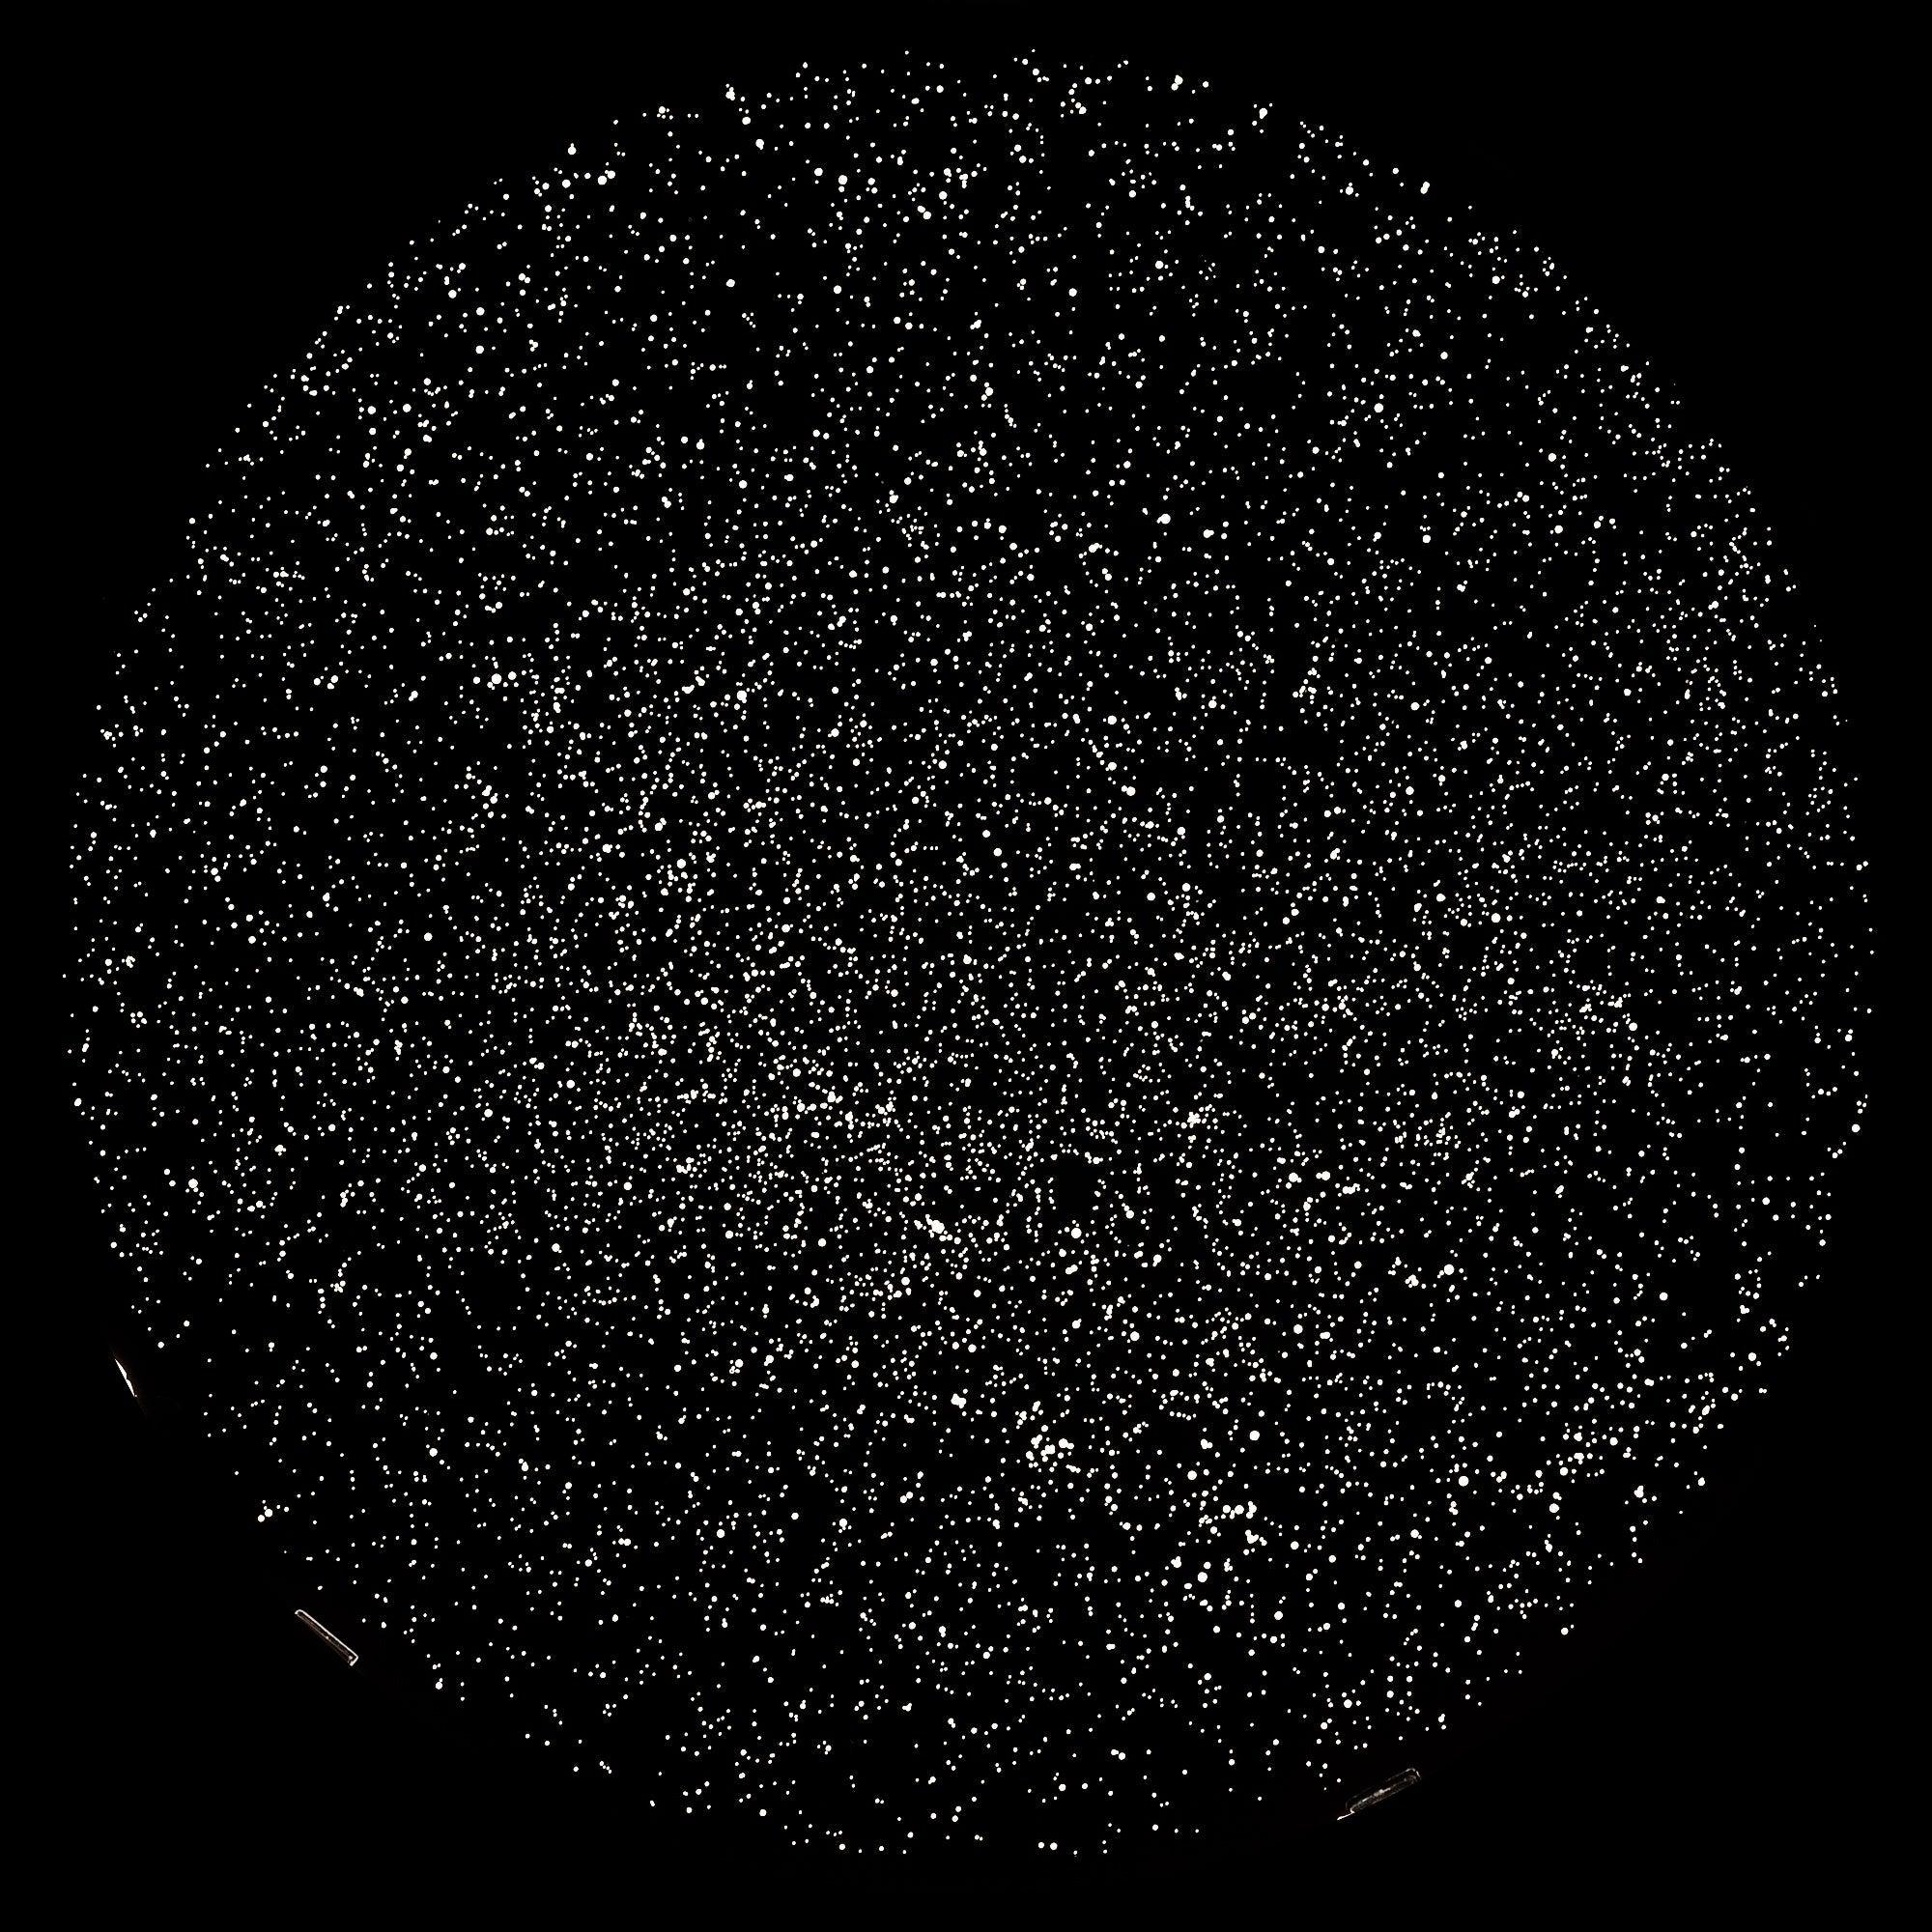 astro planétarium - projecteur ciel étoilé